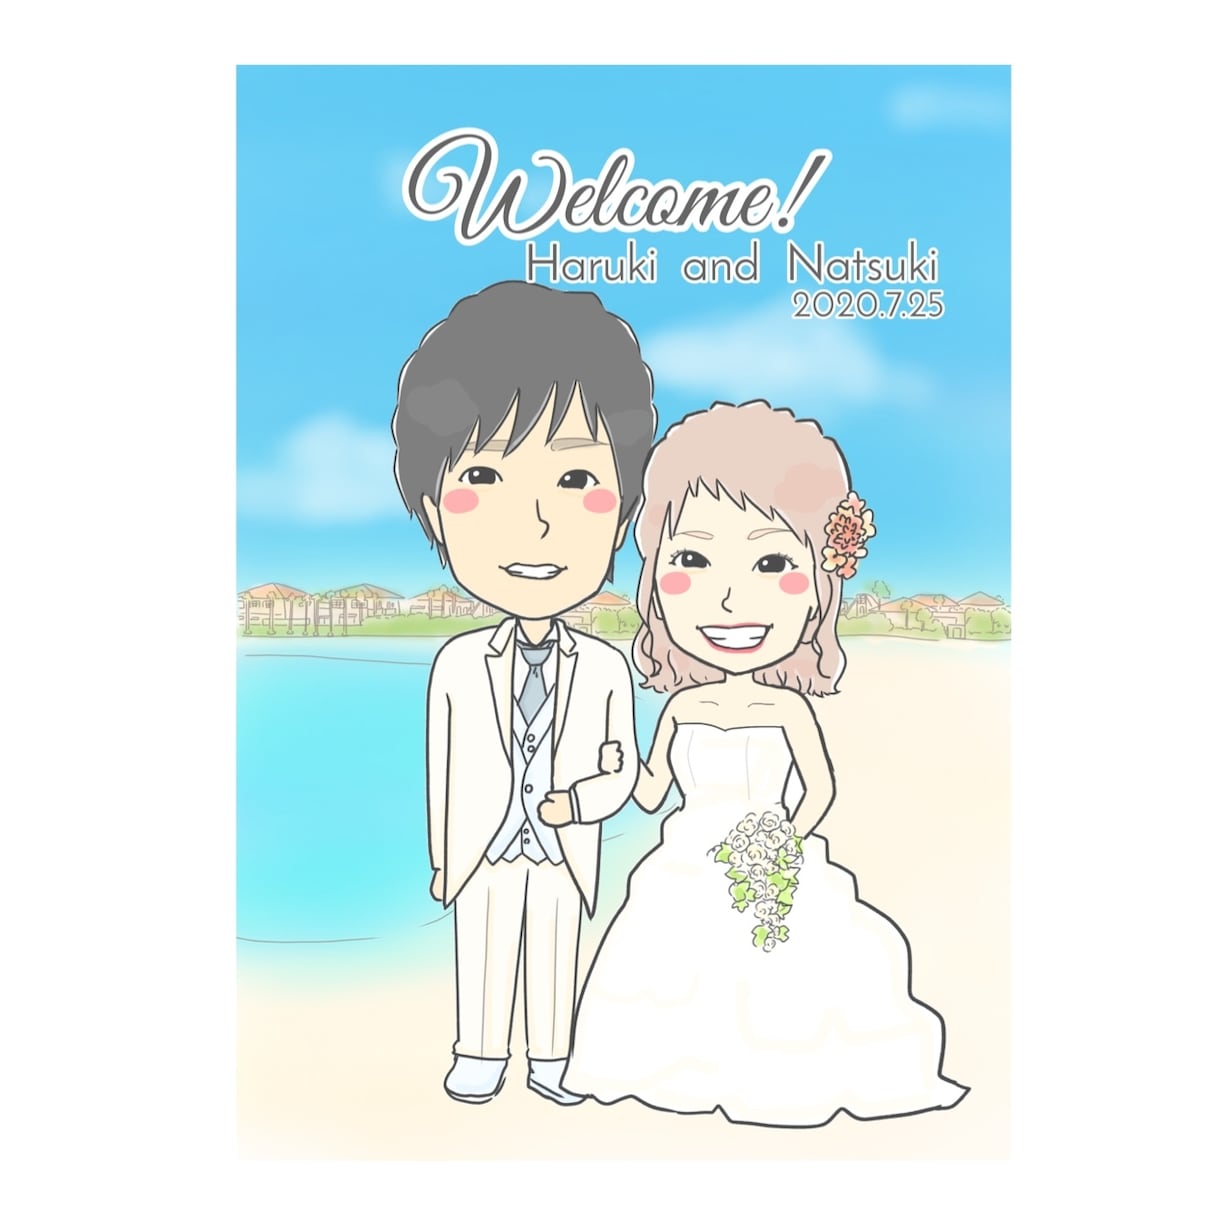 結婚式で使えるウェルカムボードにがおえ描きます 結婚式に、結婚祝いに、記念に(﹡ˆ﹀ˆ﹡) イメージ1